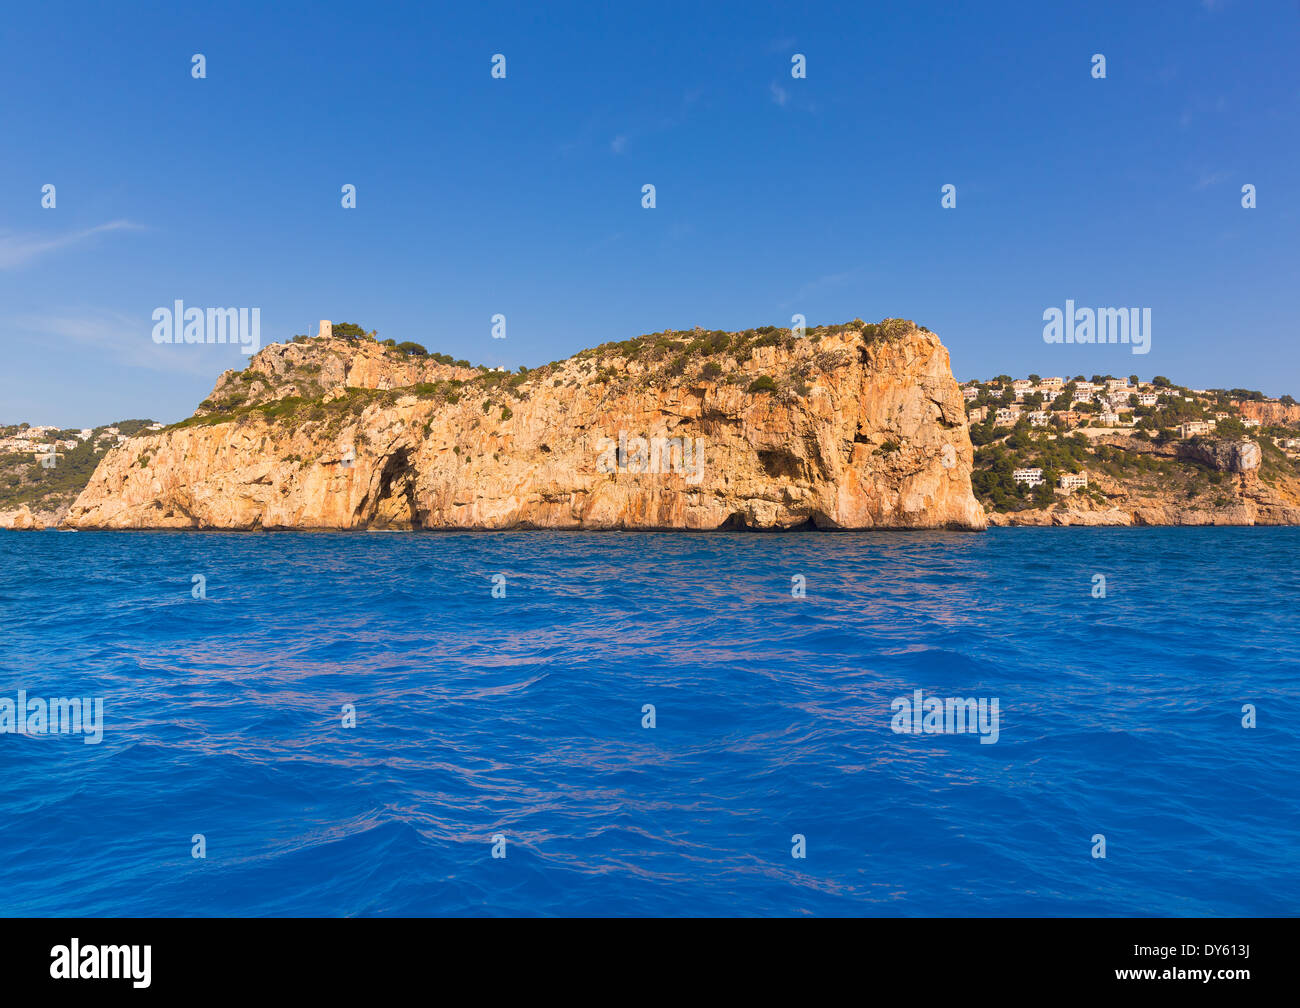 Javea Isla del Descubridor Xabia in Mediterranean Alicante at Spain Stock Photo